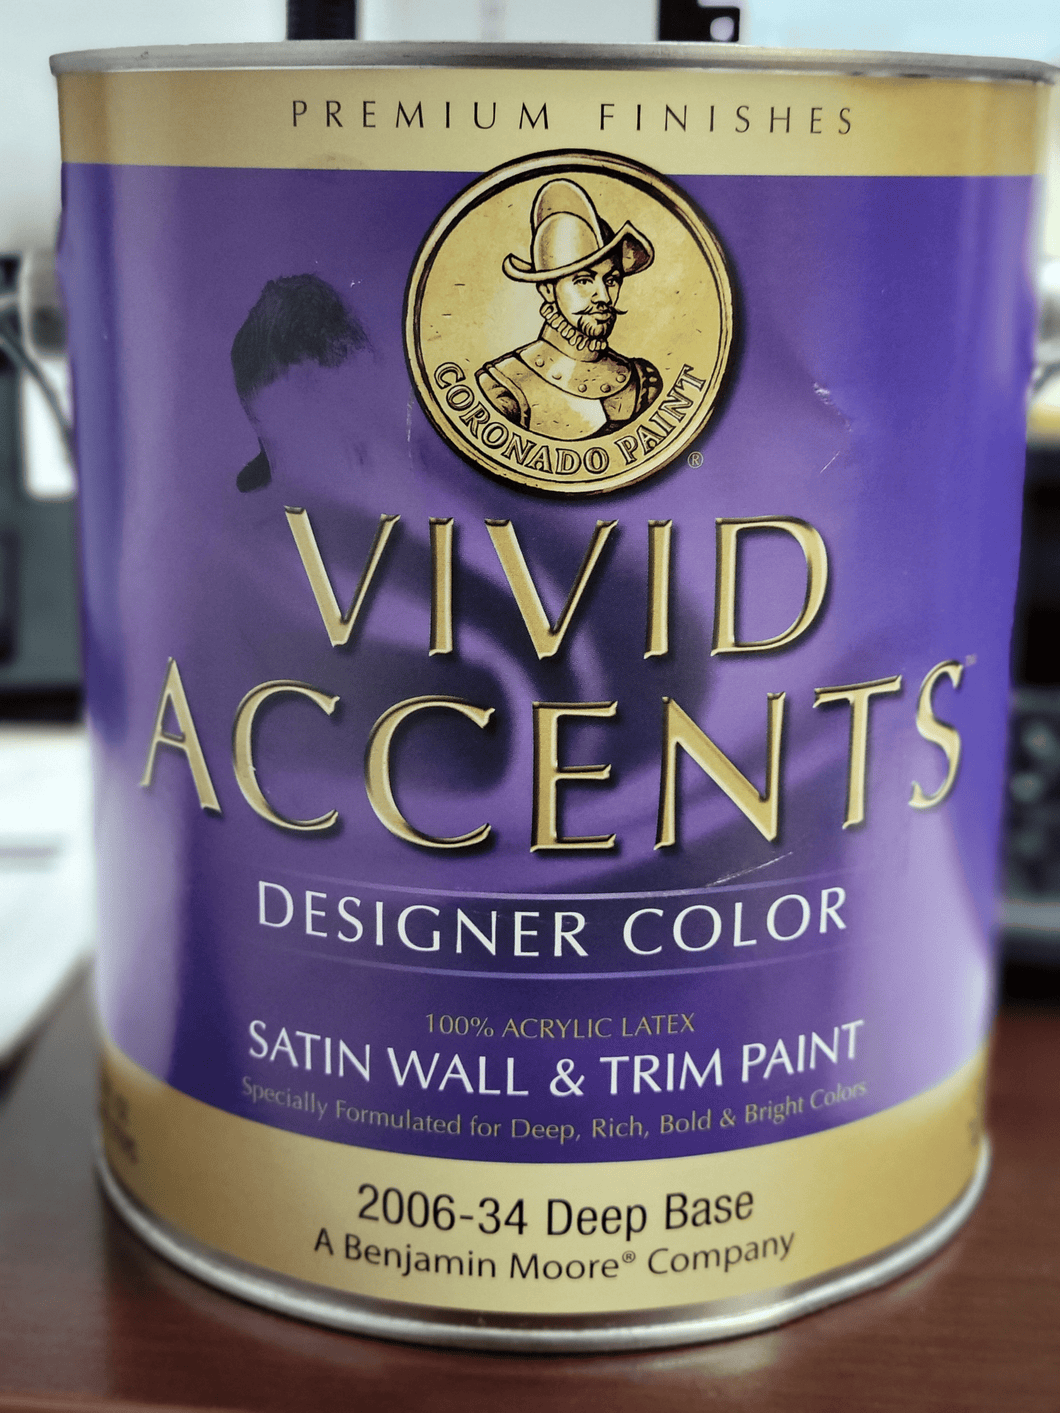 Vivid Accents Designer Color Satin Wall & Trim Paint (2006-34)